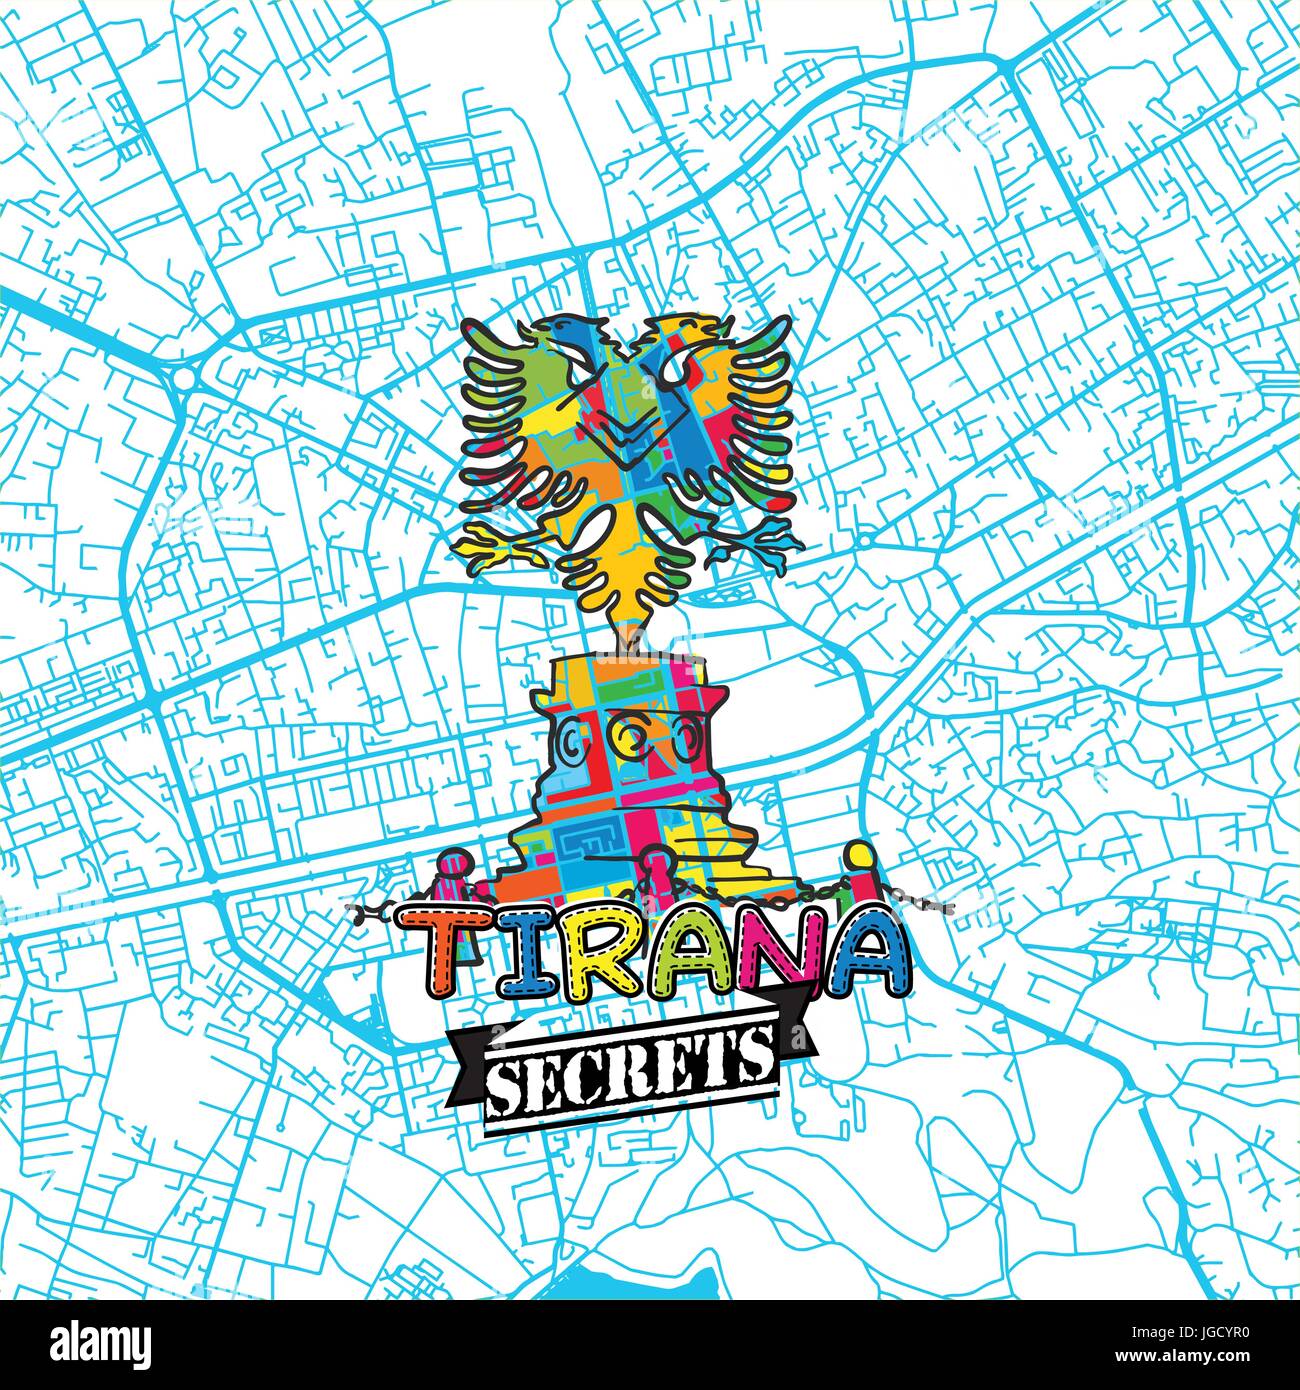 Tirana Reise Geheimnisse Art Map für die Zuordnung von Experten und Reiseführer. Handgemachte Stadt Logo, Typo-Abzeichen und Hand gezeichnete Vektor-Bild an der Spitze sind gruppiert und Stock Vektor